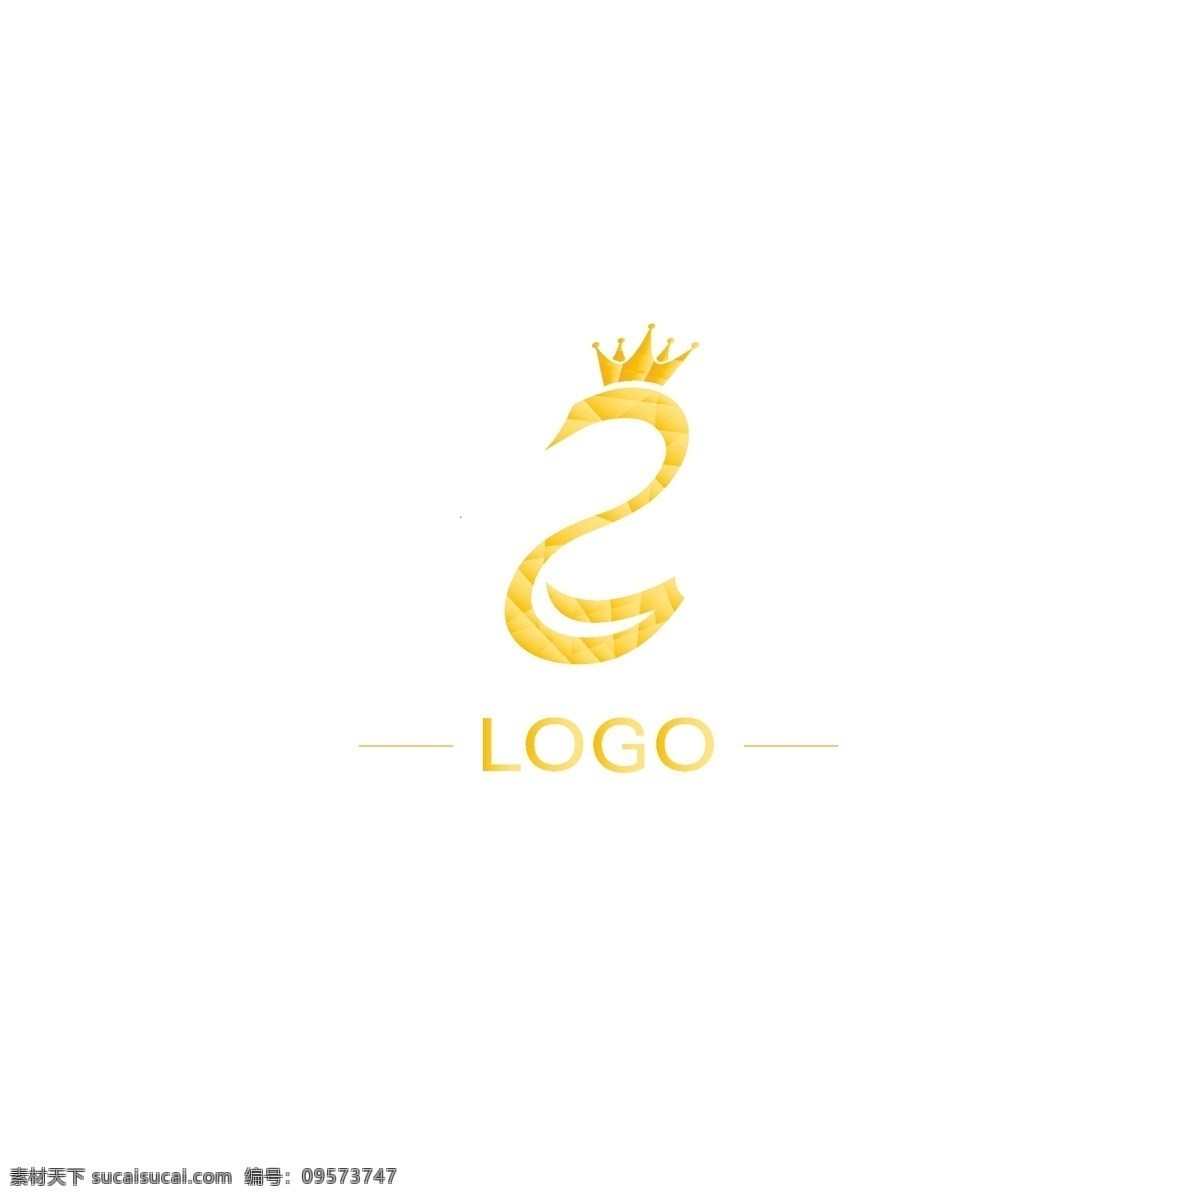 原创 企业 通用 logo 品牌 标识设计 标识 服饰 珠宝 ai矢量